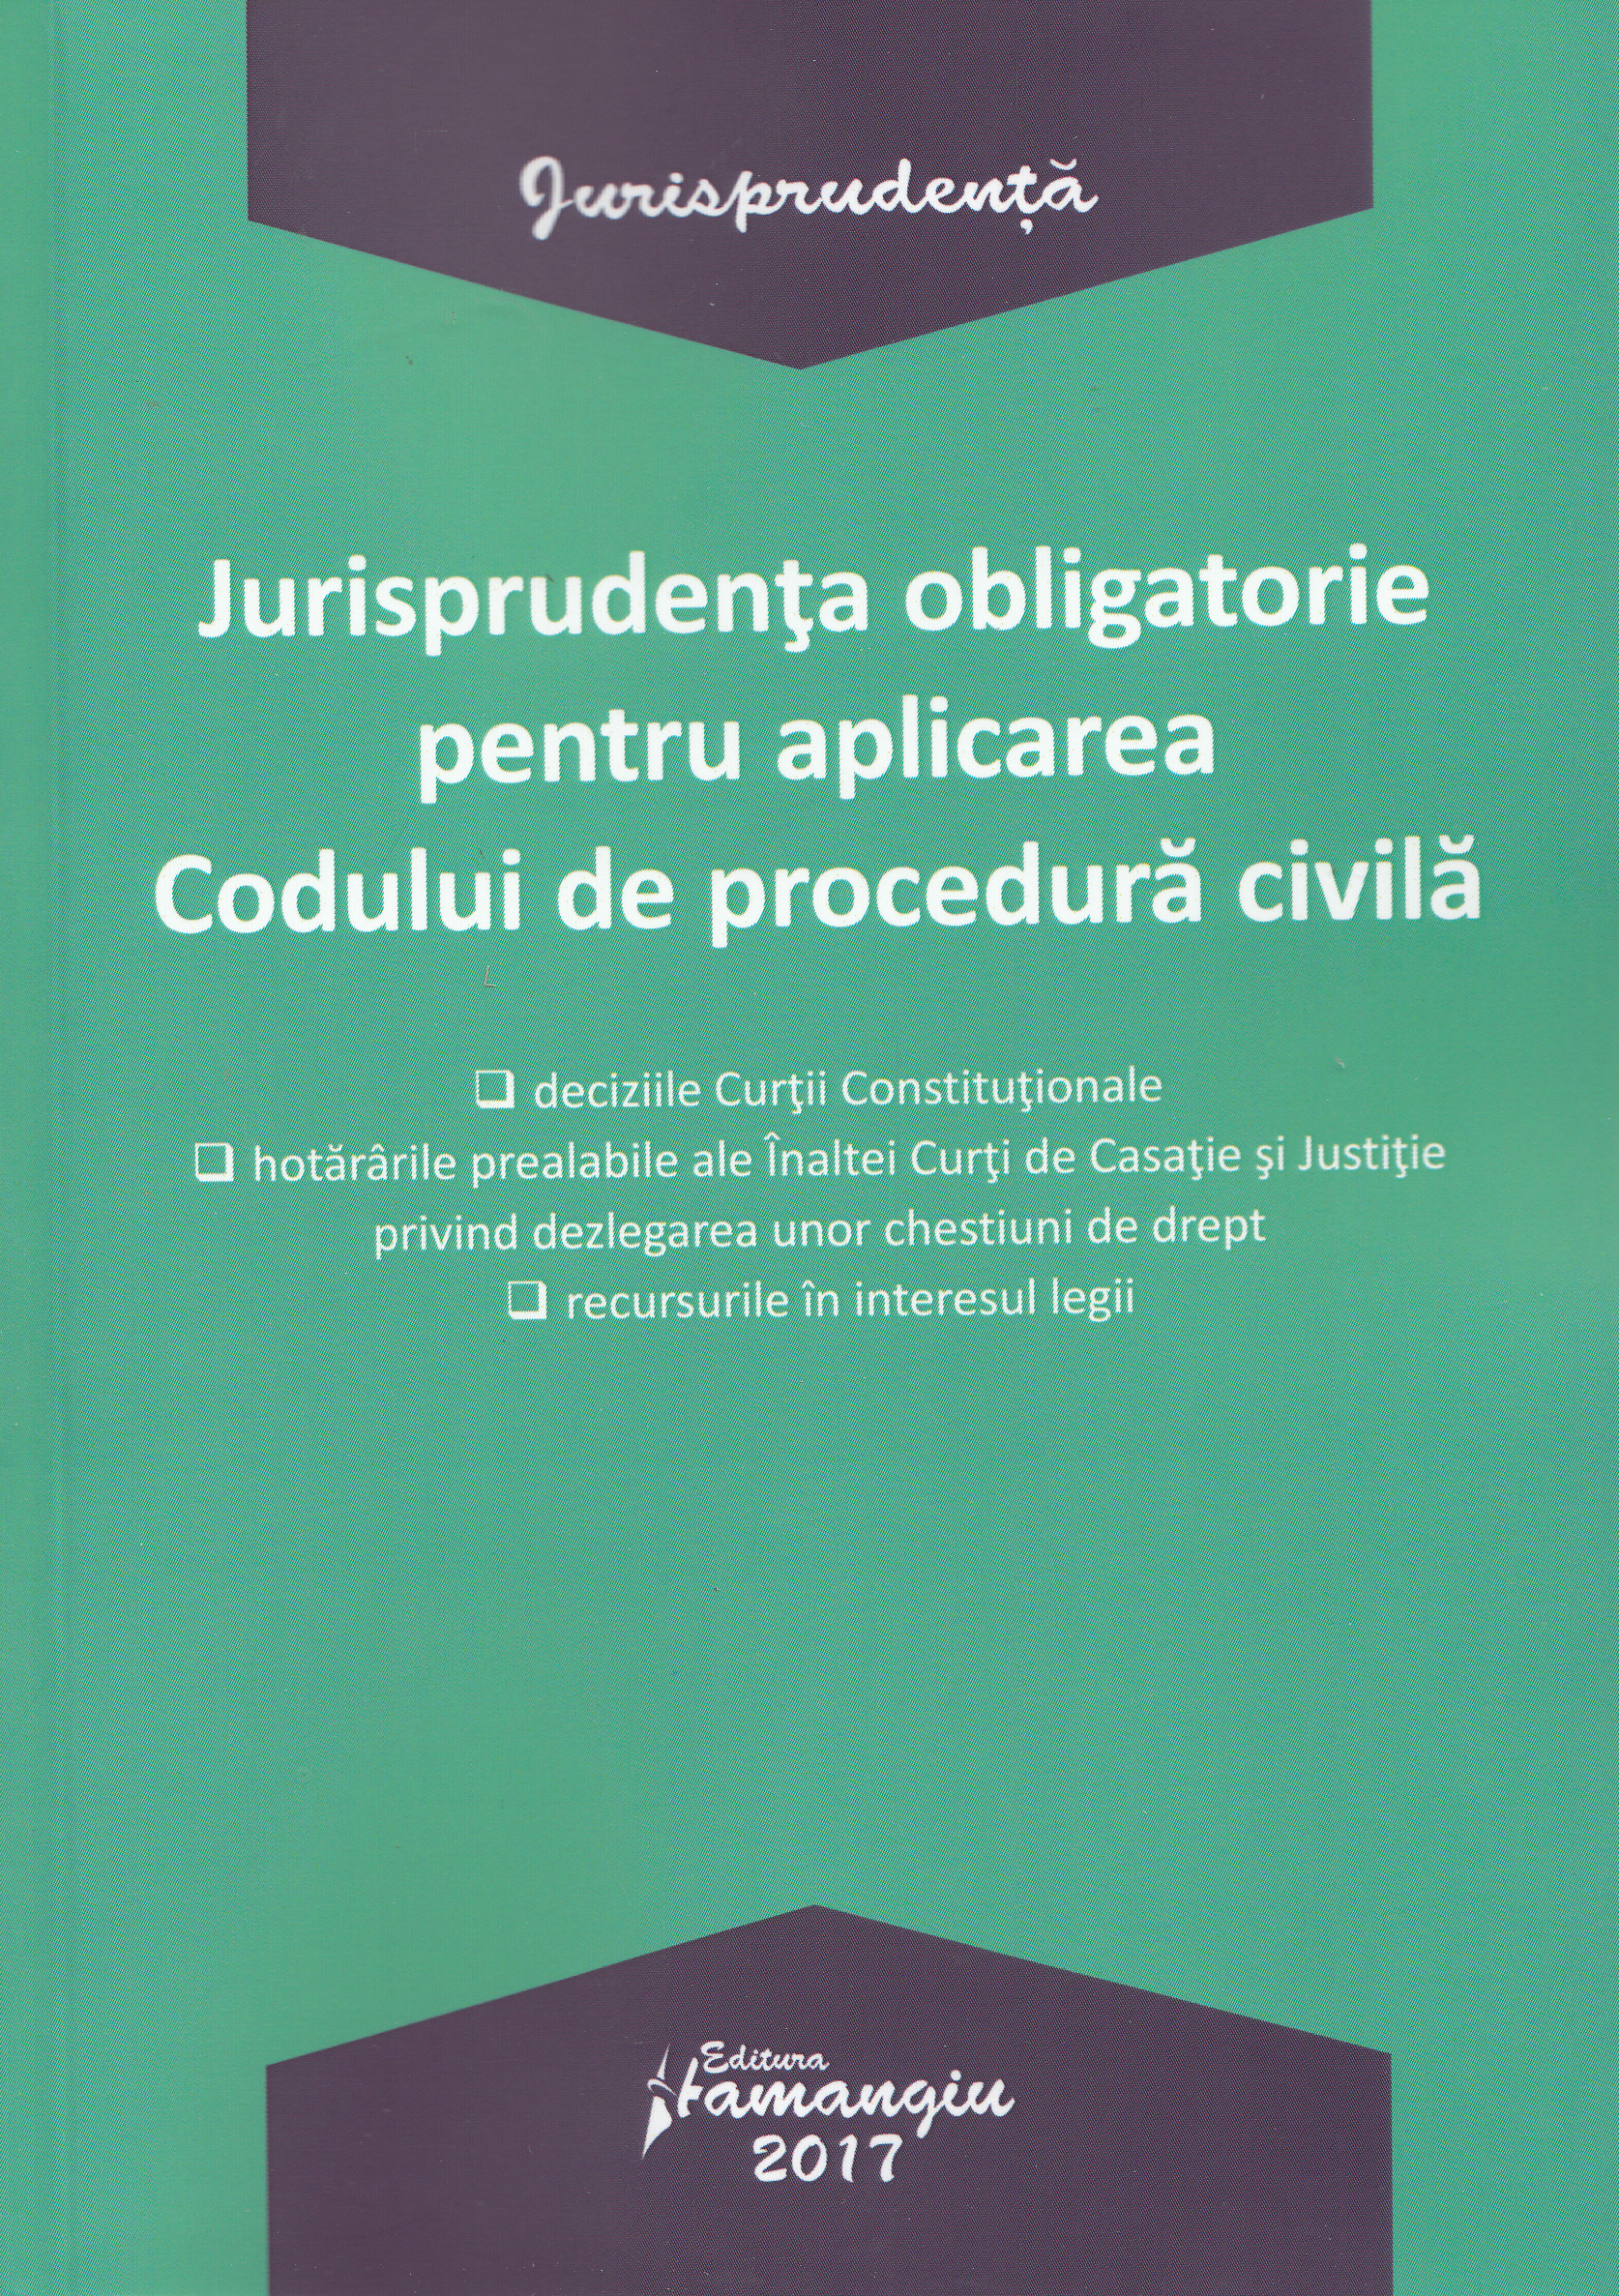 Jurisprudenta obligatorie pentru aplicarea Codului de procedura civila